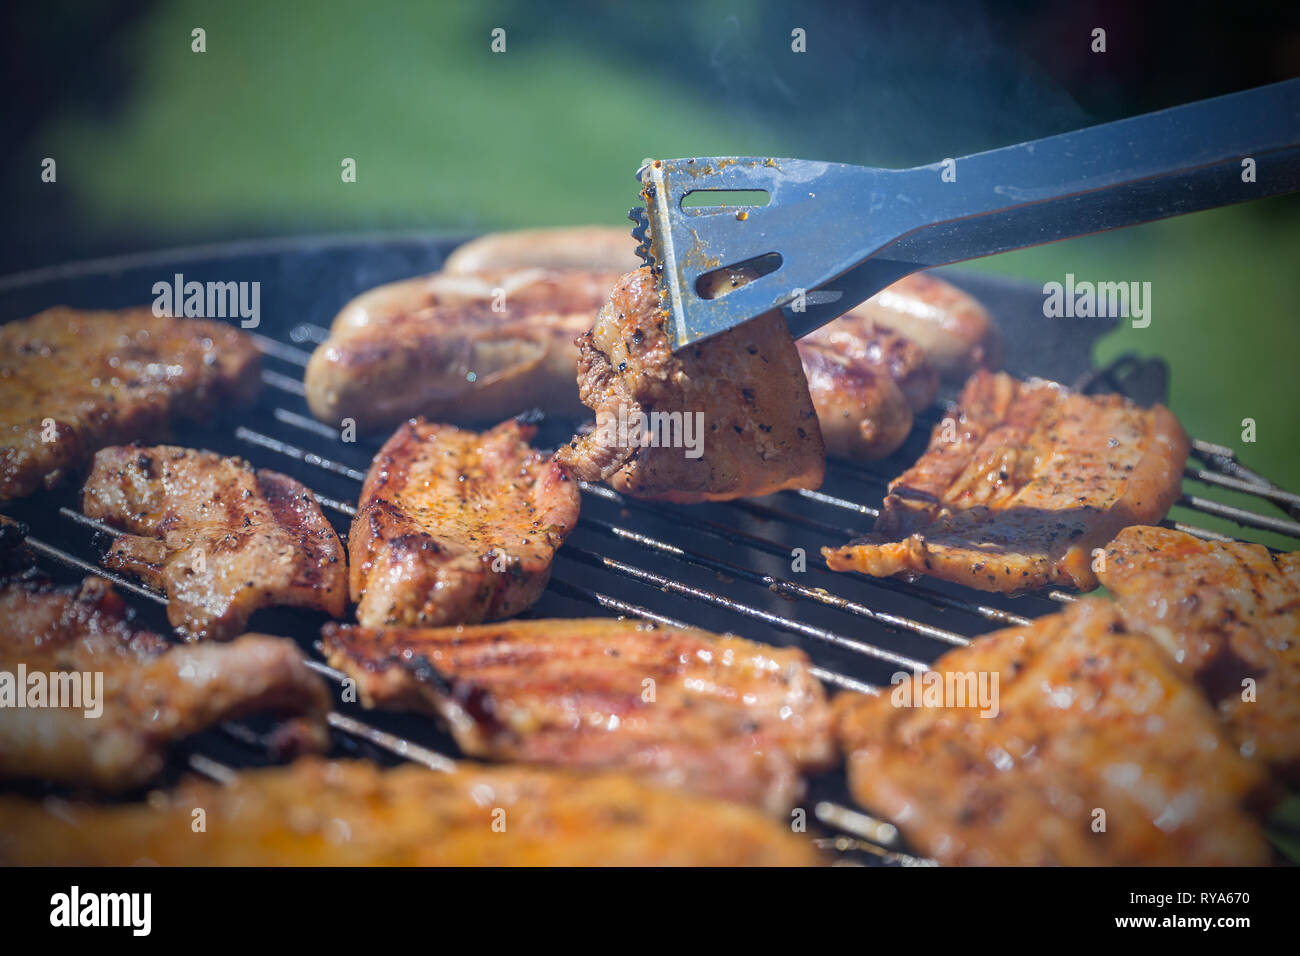 Bauchfleisch und Wuerstchen auf dem Grill, ein Stueck Bauchfleisch wird mit einer Grillzange umgedreht bei THEMENBILD Grillen, 06.05.2018 Foto: Mario  Stock Photo